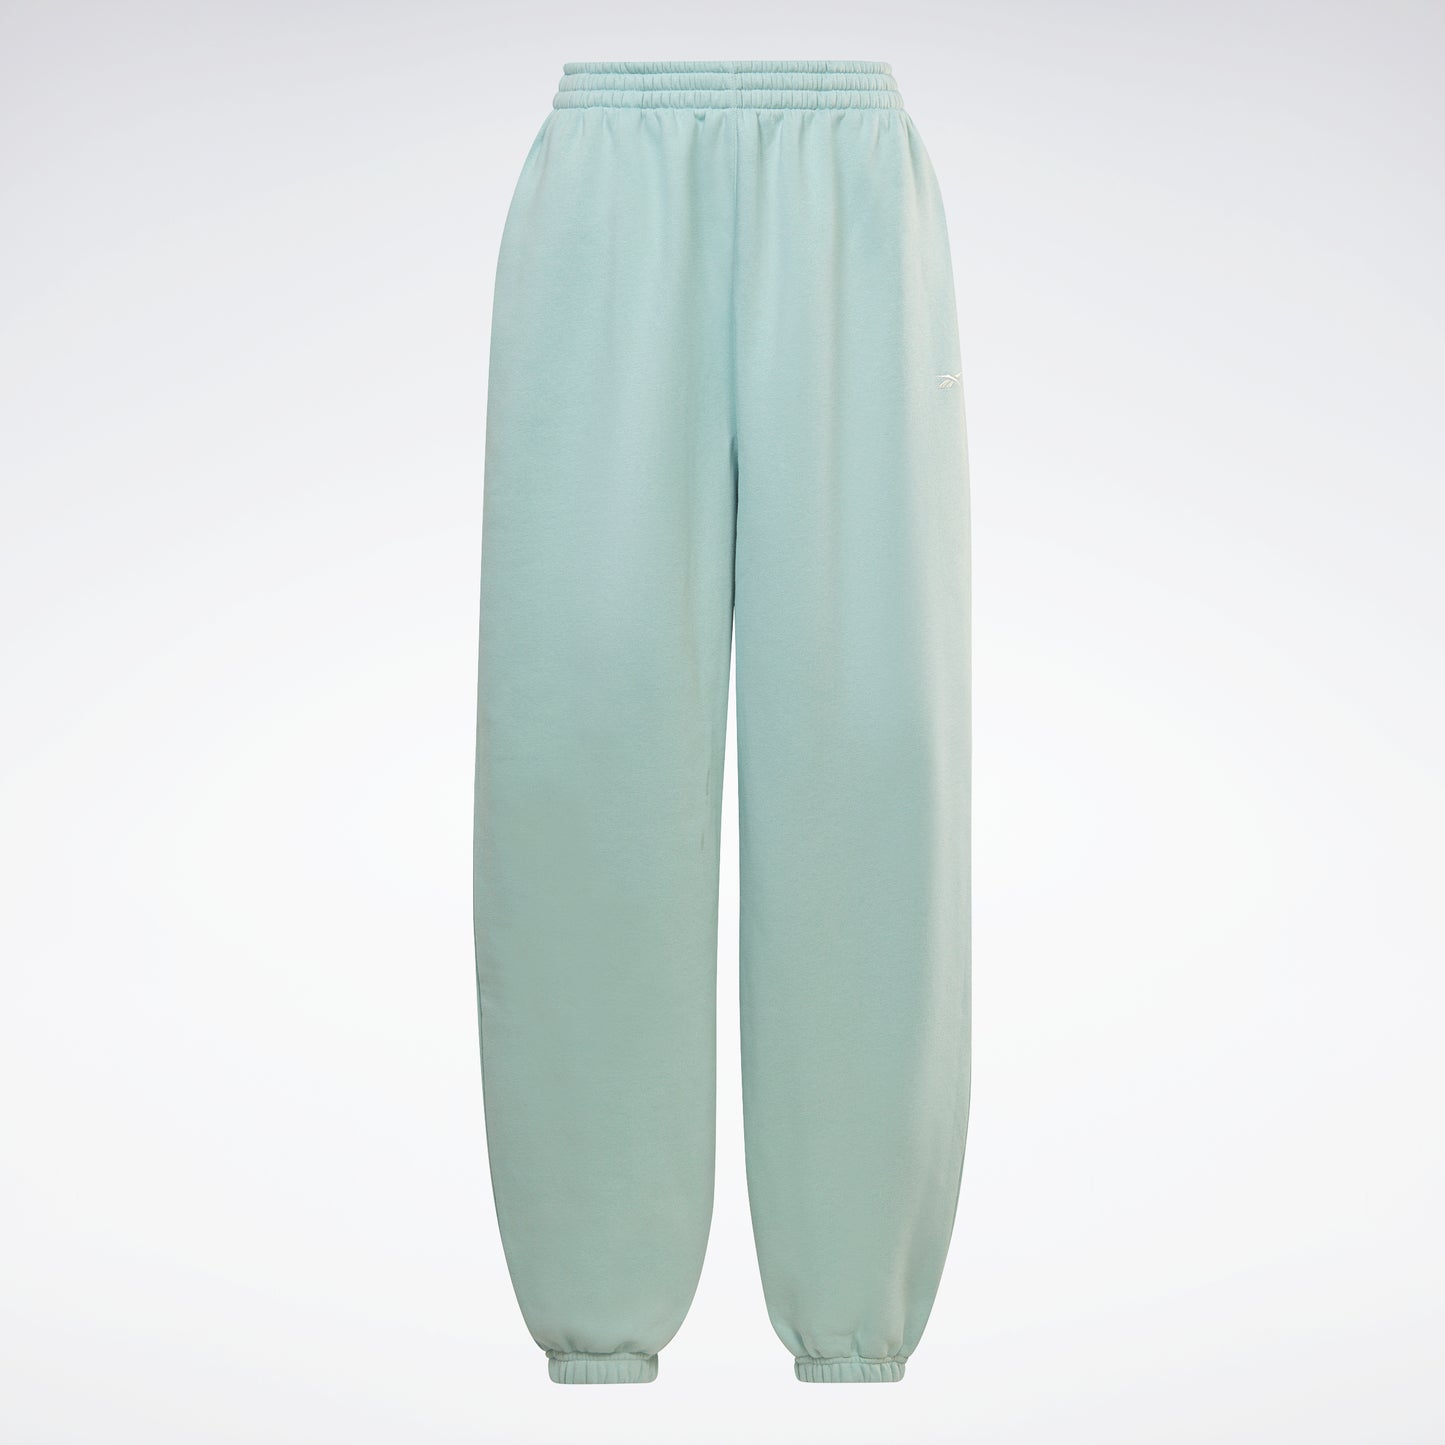 Reebok Dreamblend Cotton Knit Pants Xl Medium Grey Heather : Target